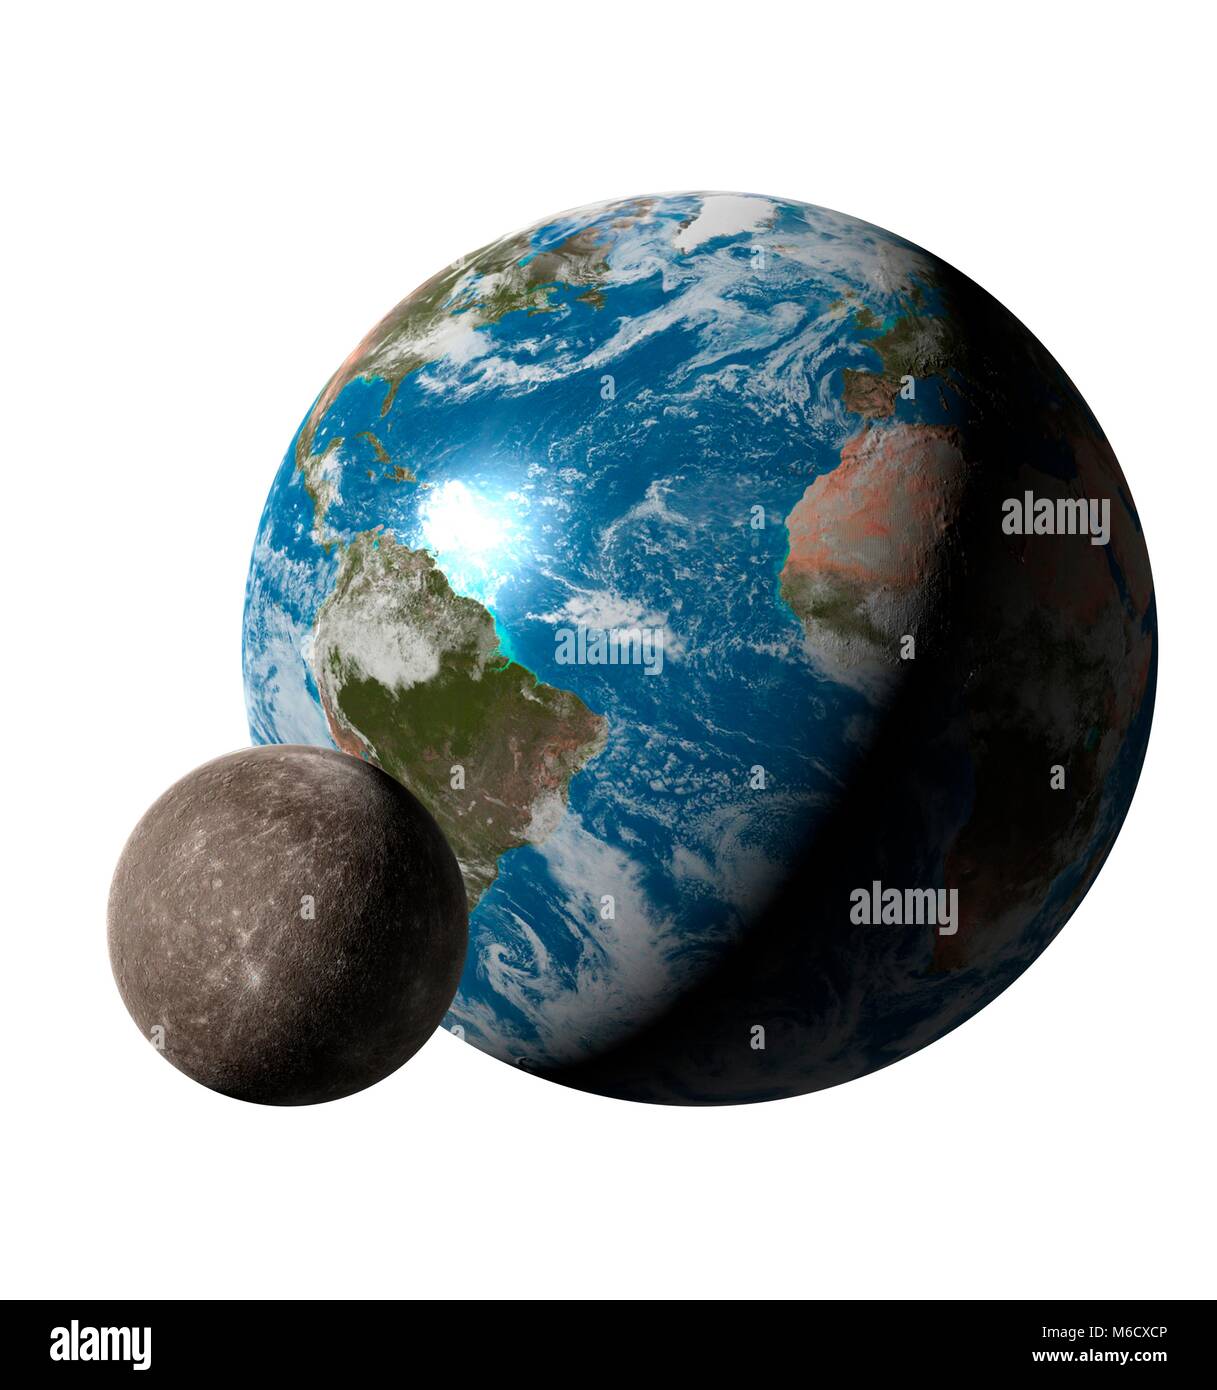 Per il confronto di immagini delle dimensioni della Terra (a destra) con il pianeta Mercurio. Esso è il pianeta più vicino al sole, con una distanza media da esso di 0,39 volte la distanza Earth-Sun. Con un diametro del 38% a quella della Terra, il mercurio è il sistema solare più piccolo pianeta. Foto Stock